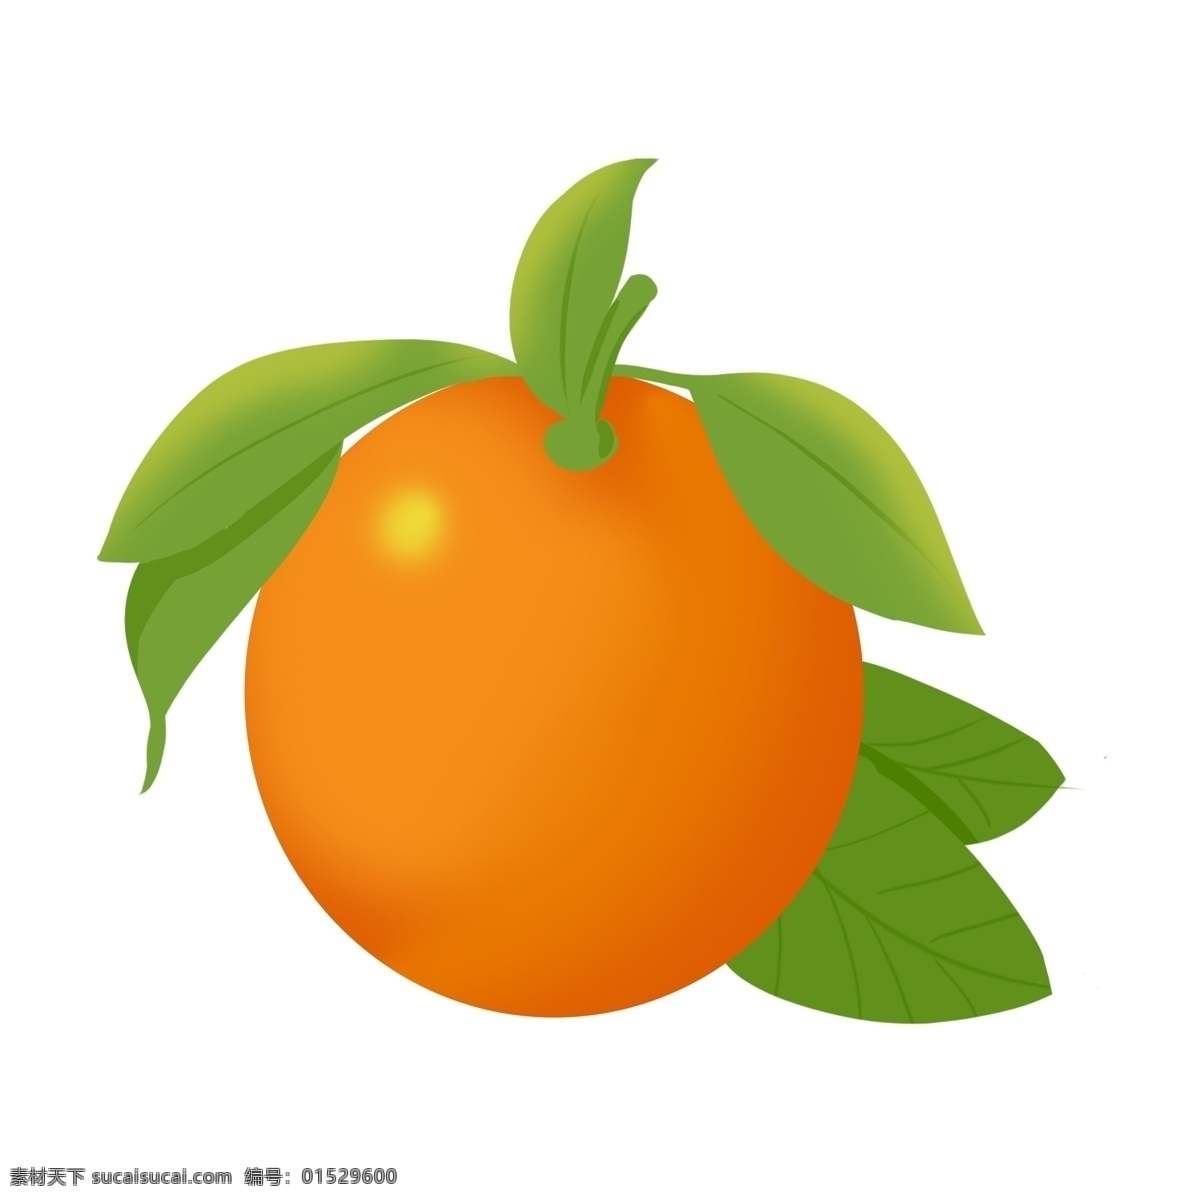 健康 水果 橙子 果肉 一个橙子 橘子 橙色 绿色叶子 新鲜水果 健康食物 橘子叶 桔子叶 橙子水果 橙子果实